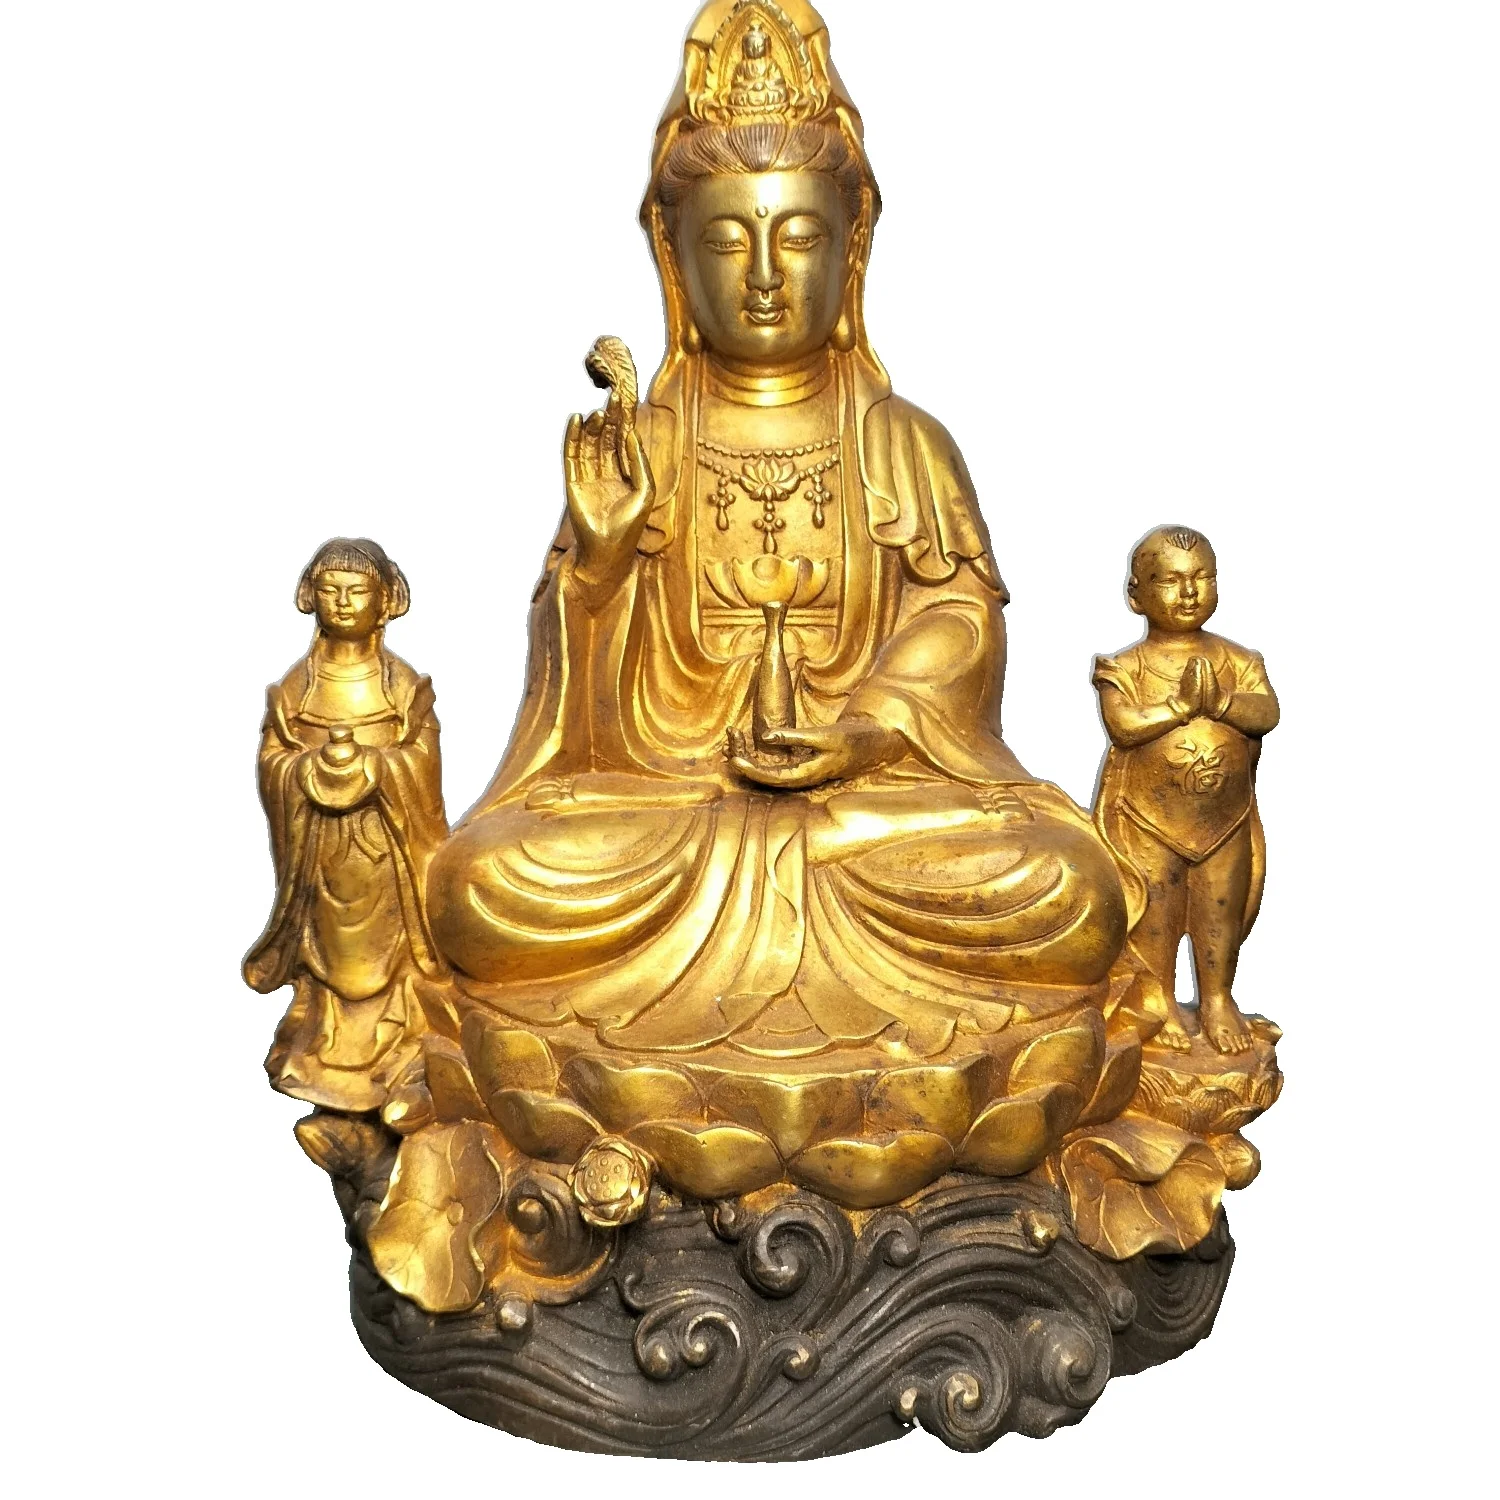 

Статуя Будды из чистой позолоченной бронзы LAOJUNLU старой коллекции, сын богини милосердия, в качестве орнамента под старину